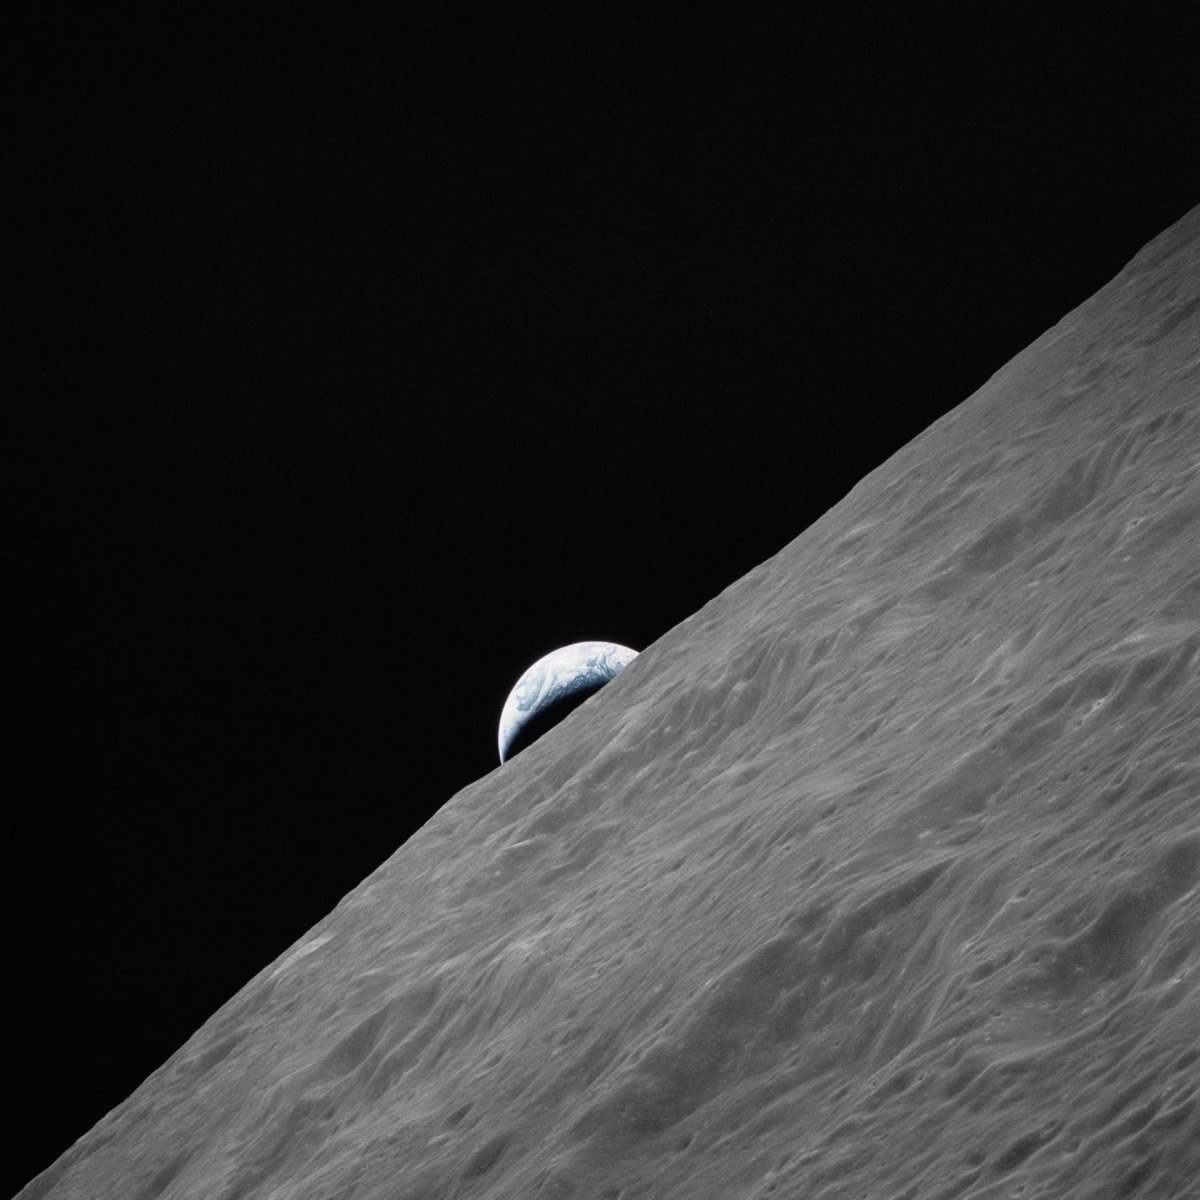 Terra vista do horizonte lunar em registro feito pelos astronautas da Apollo 17